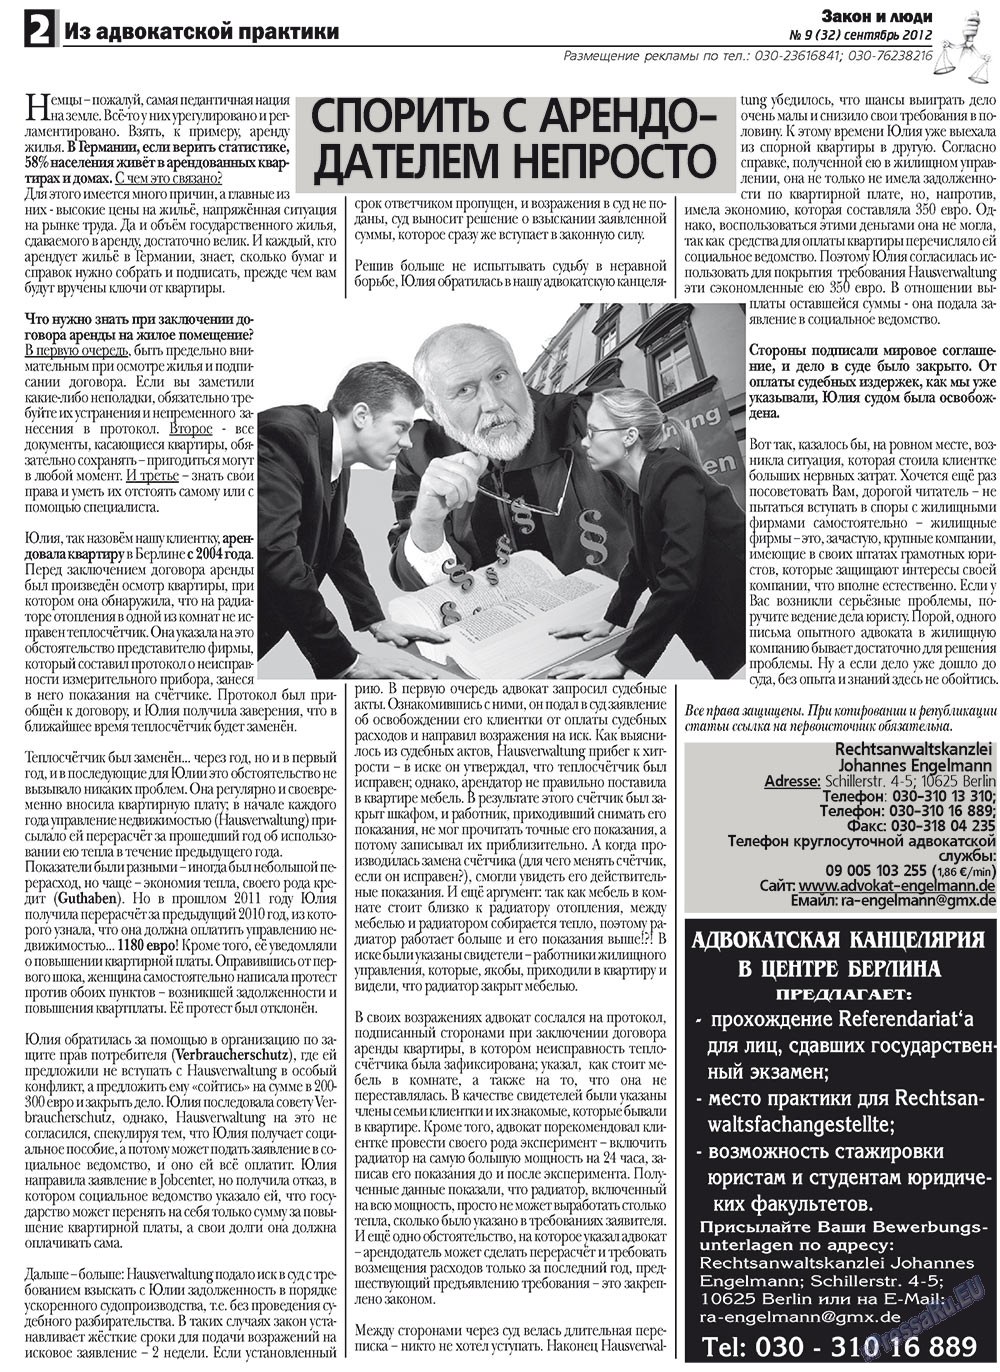 Закон и люди, газета. 2012 №9 стр.2